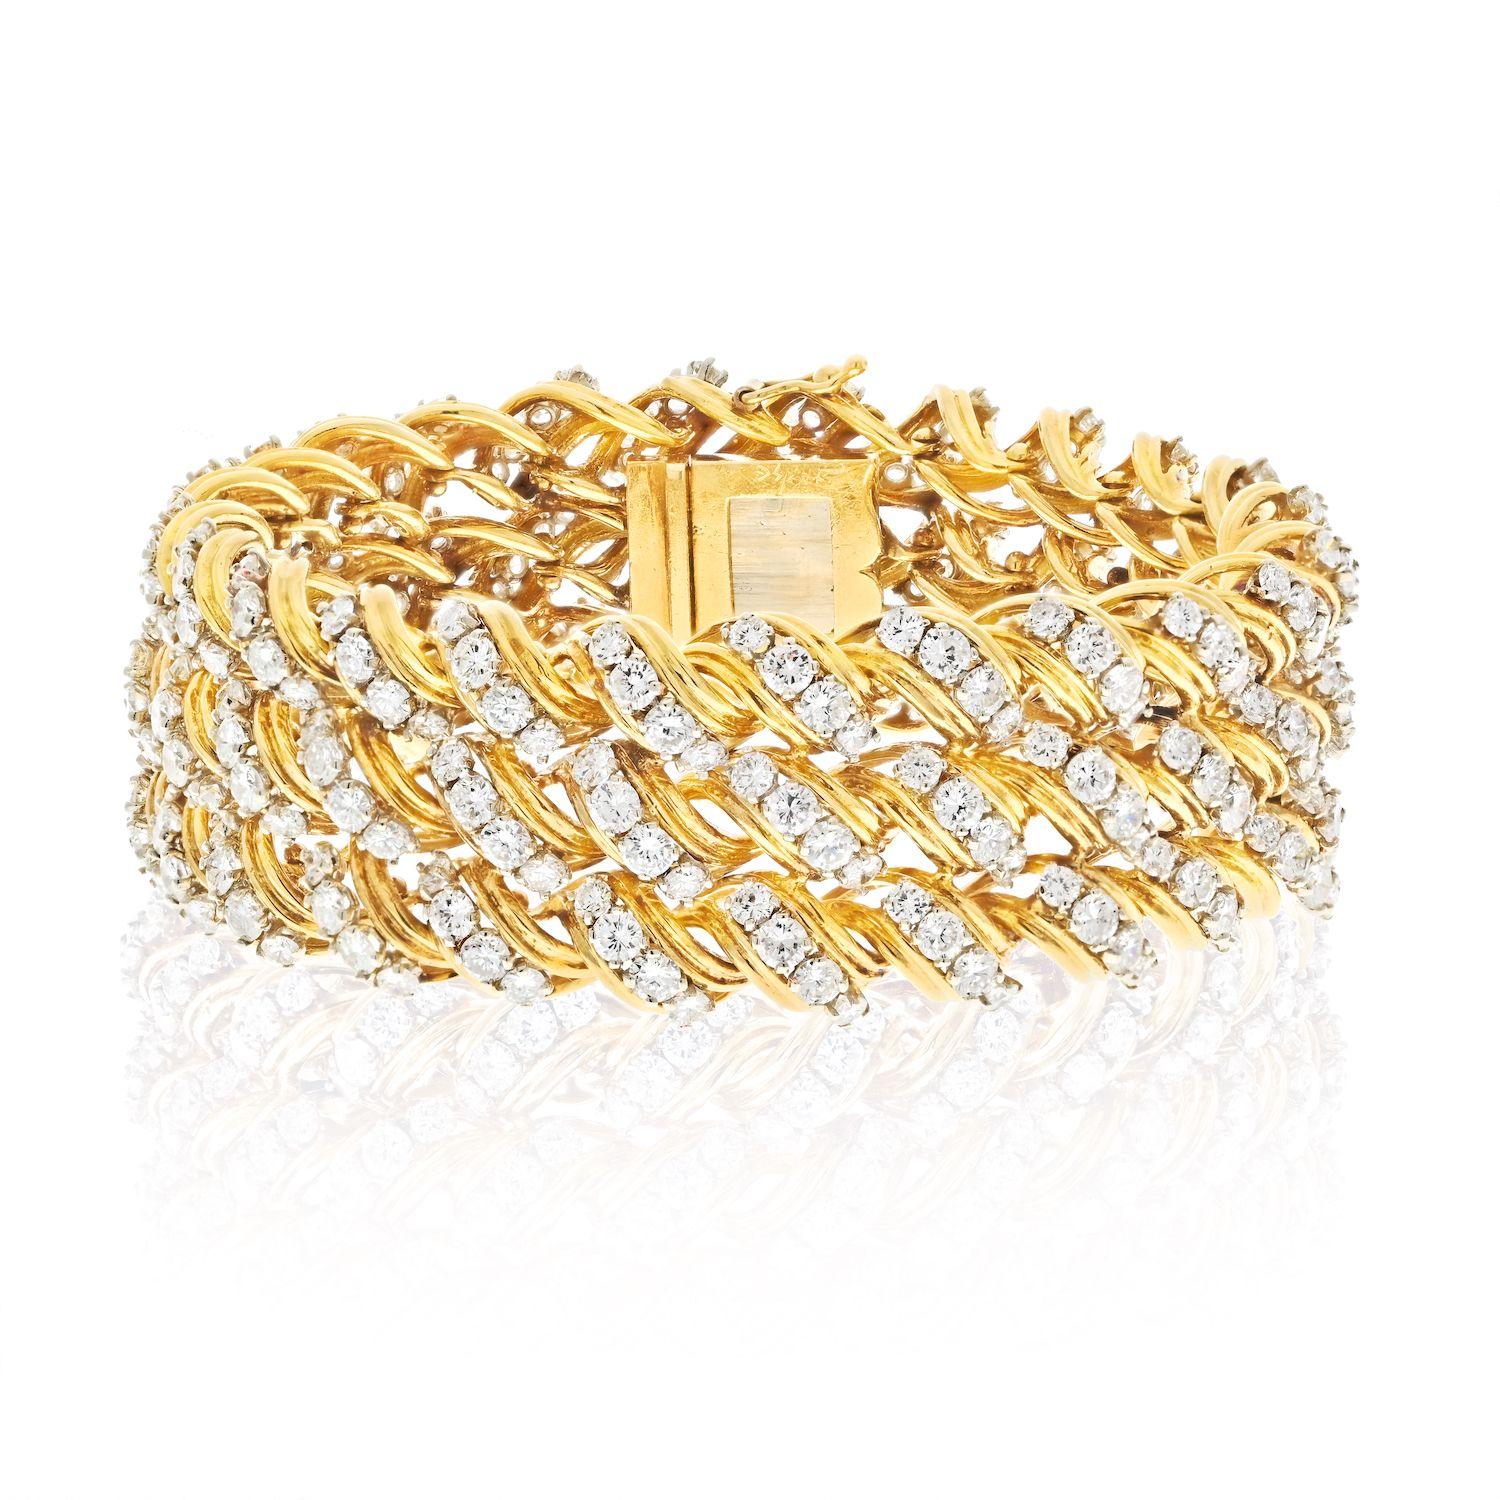 Ce bracelet en or jaune 18 carats des années 1970 est un véritable chef-d'œuvre de joaillerie. Les rangées torsadées de fils d'or confèrent au bracelet une texture unique et l'ajout de diamants de taille ronde sertis dans l'or rehausse encore sa